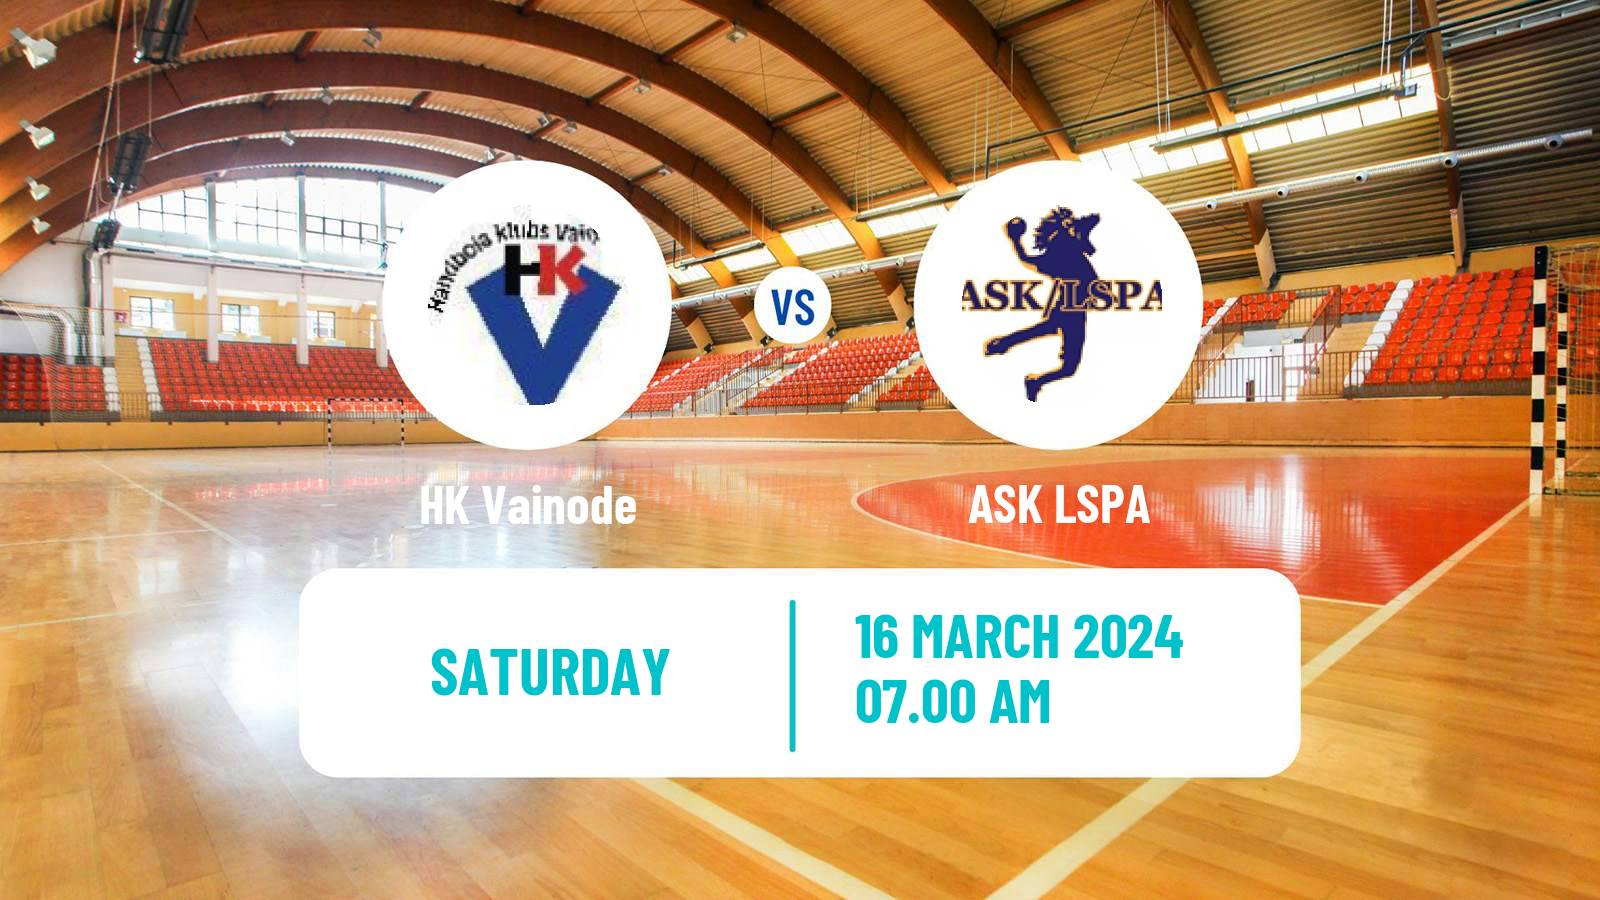 Handball Latvian Virsliga Handball Vainode - ASK LSPA